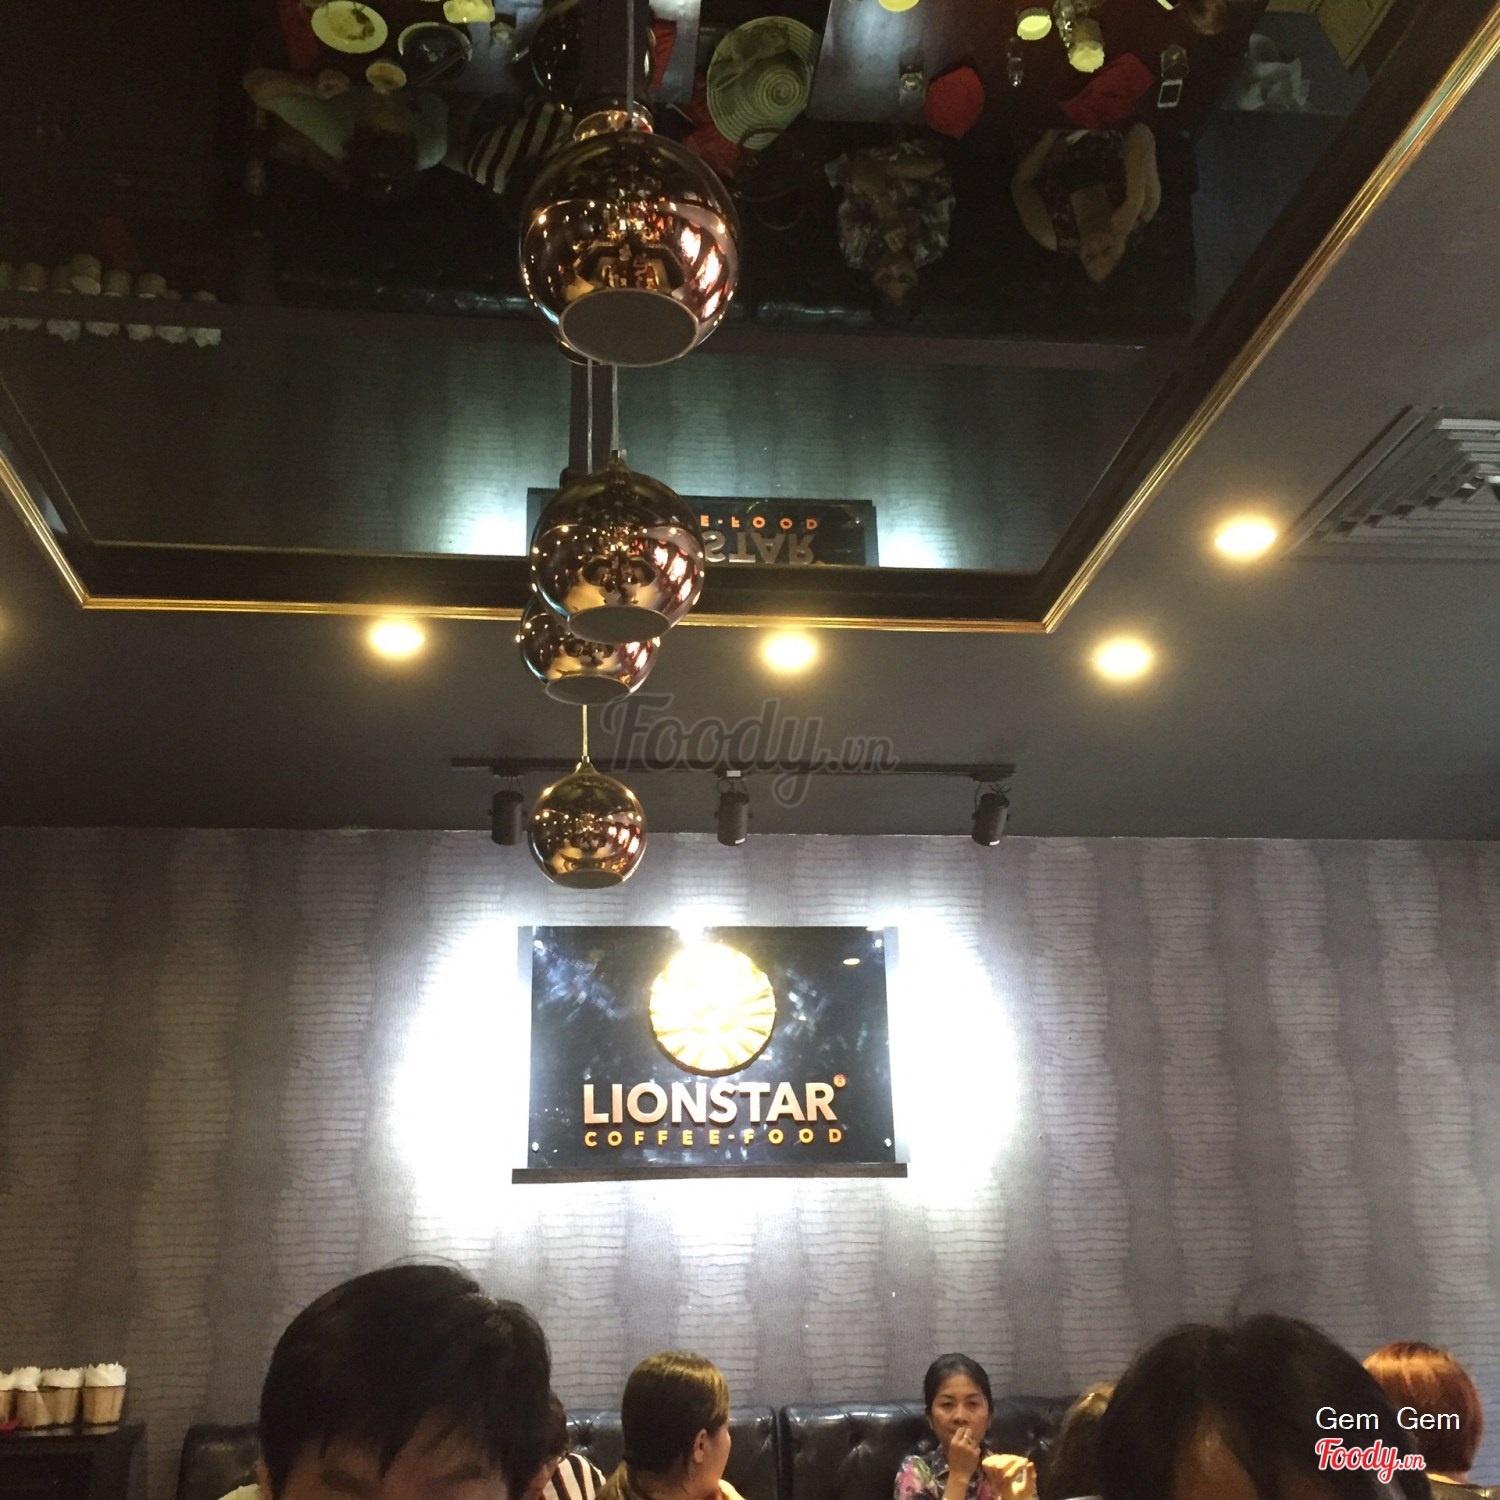 Lion Star - Coffee & Food - Tràngthi Ở Quận Hoàn Kiếm, Hà Nội | Album Không  Gian | Lion Star - Coffee & Food - Tràngthi | Foody.Vn